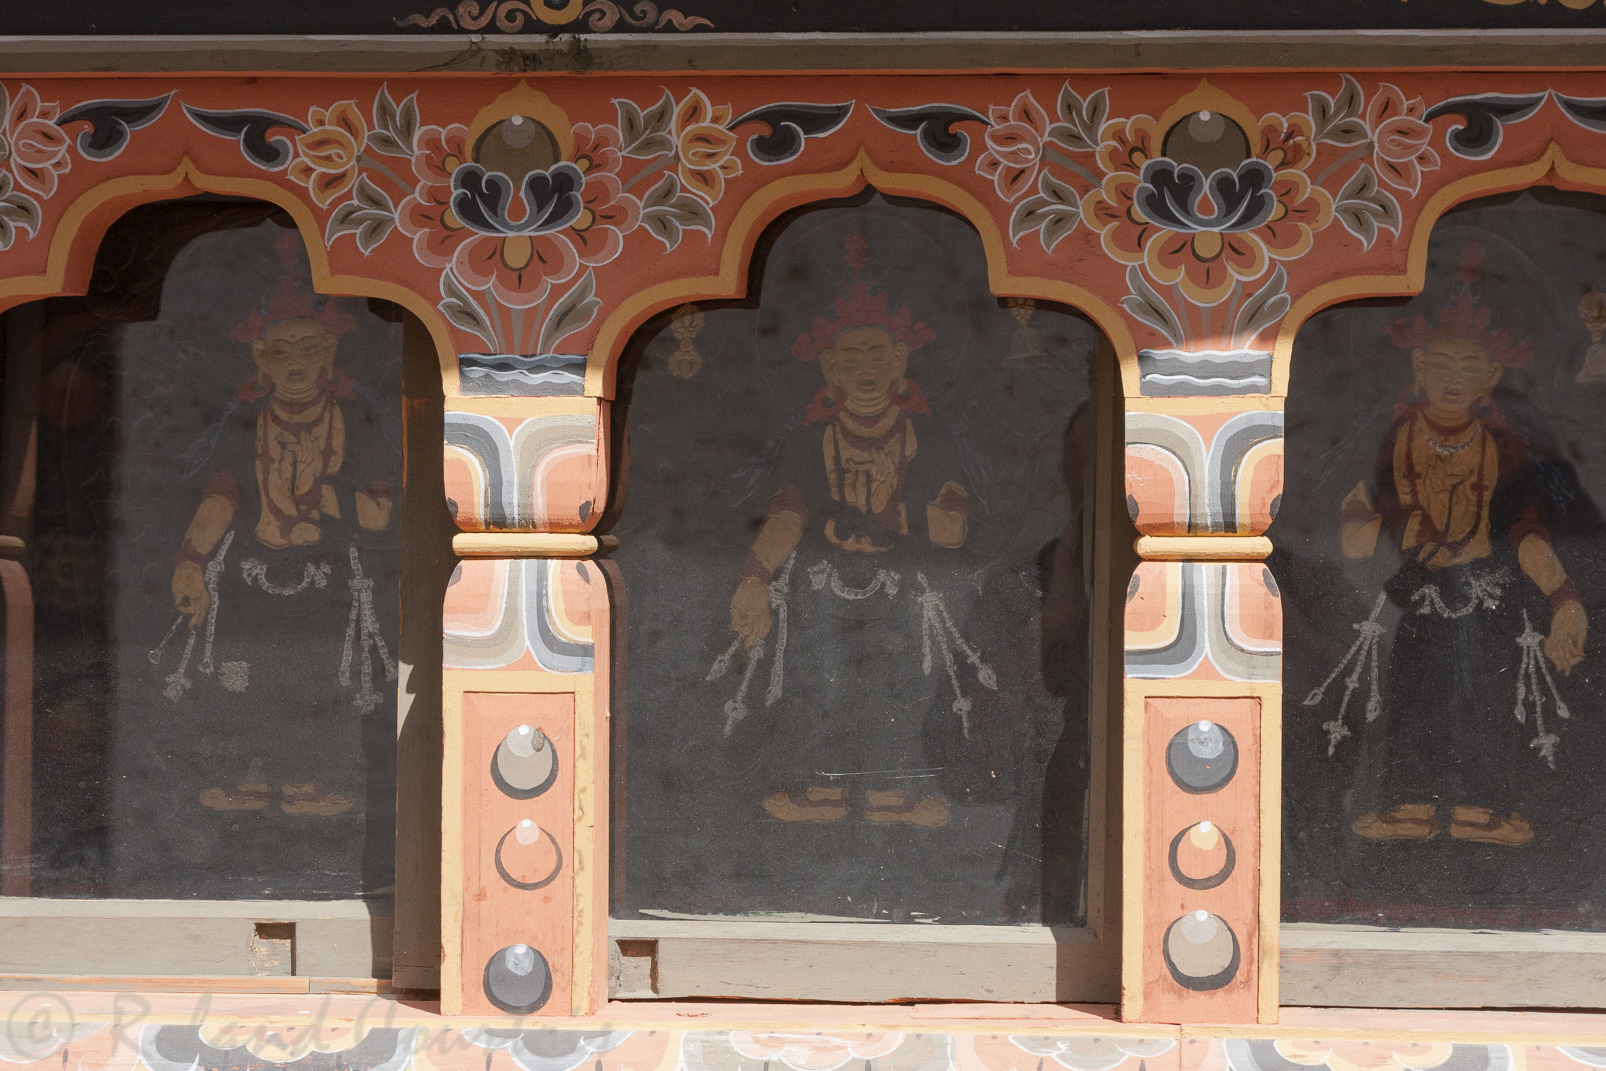 Dzong de Simtokha. Dans les petites niches qui entourent le temple, des lamas et des bouddhas sont représentés sur des ardoises sculptées, typiques du Bhoutan.
Des personnages importants de la tradition bhoutanaise « Nous sommes le Bhoutan ».